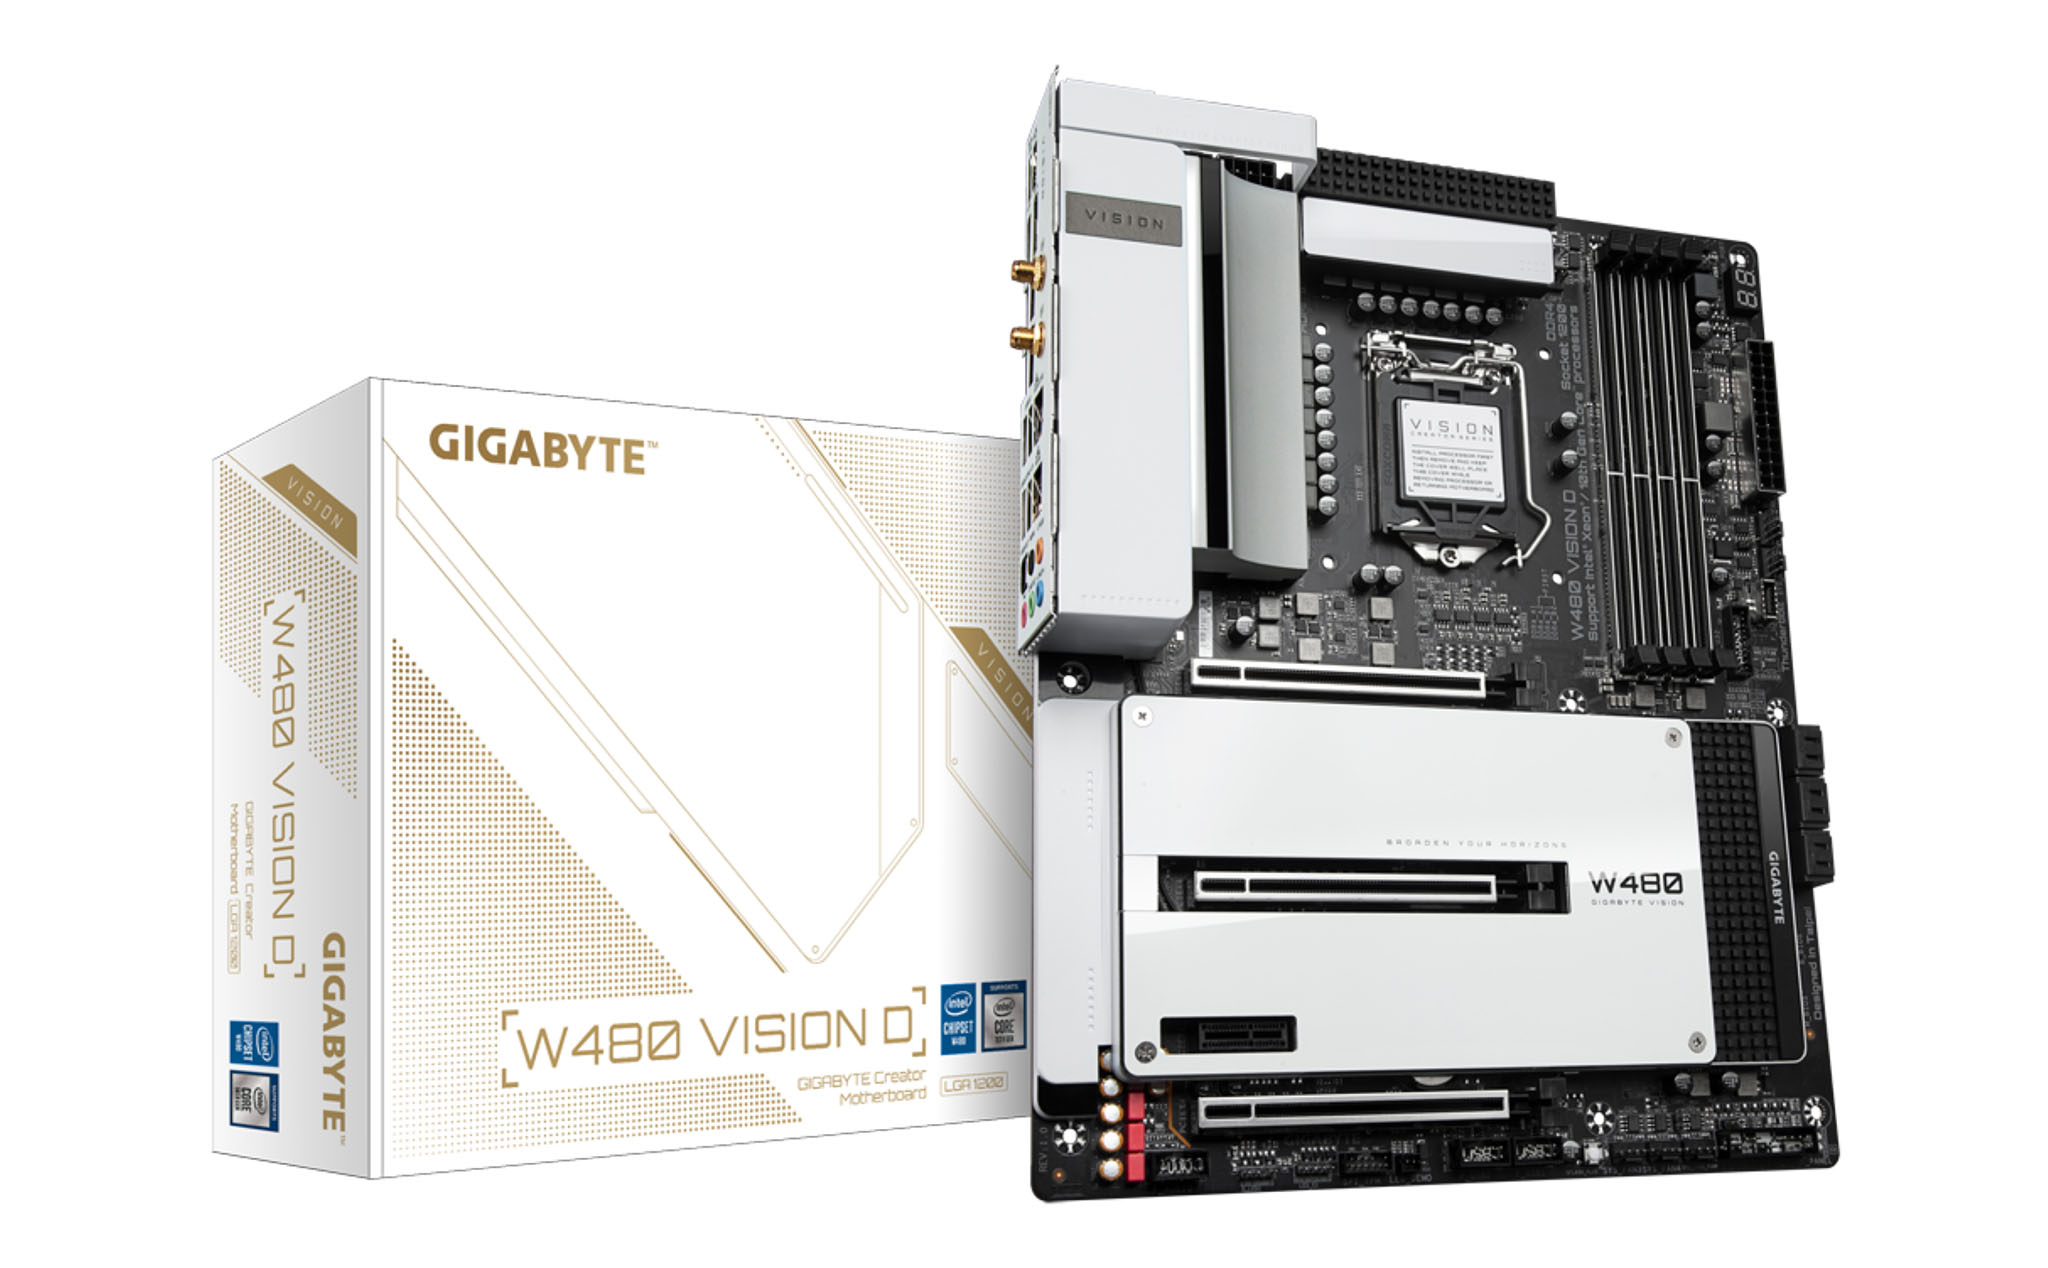 Gigabyte W480 Vision D (1).jpg